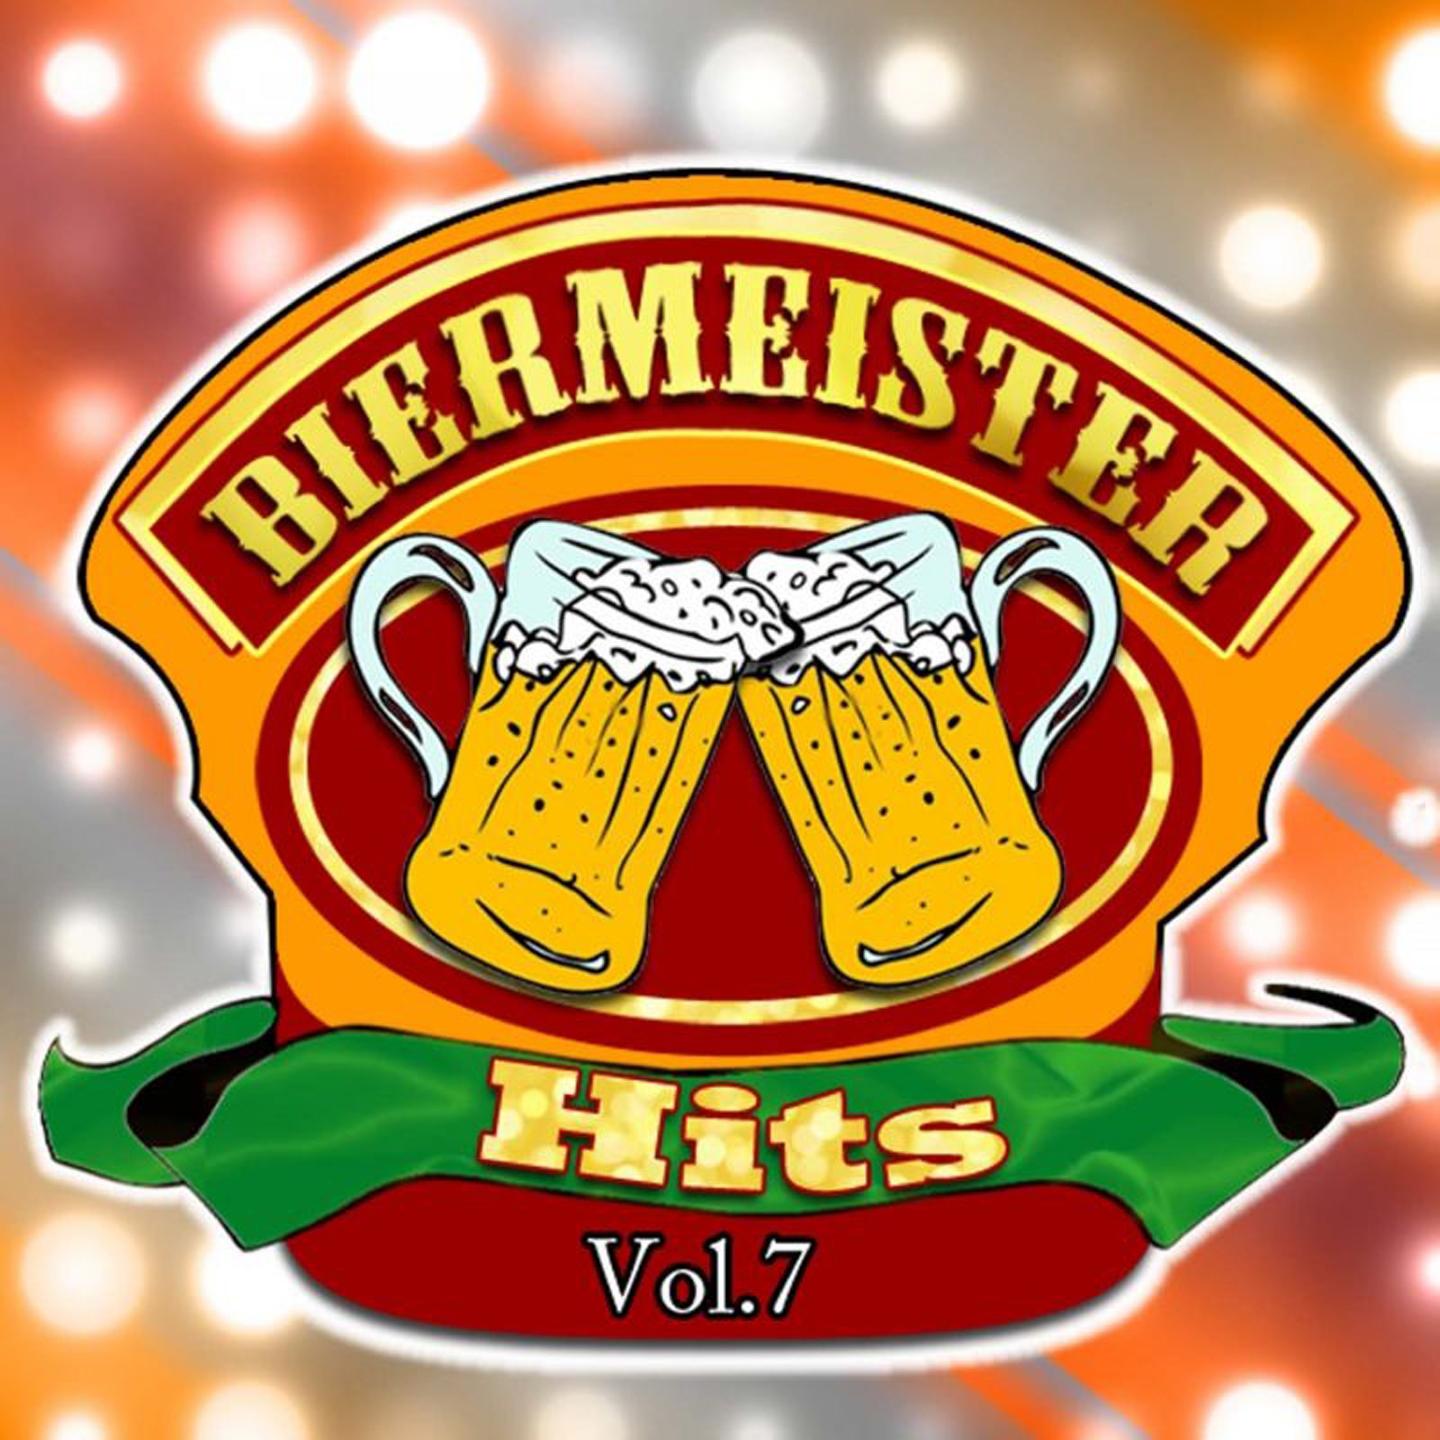 Biermeister Hits, Vol. 7